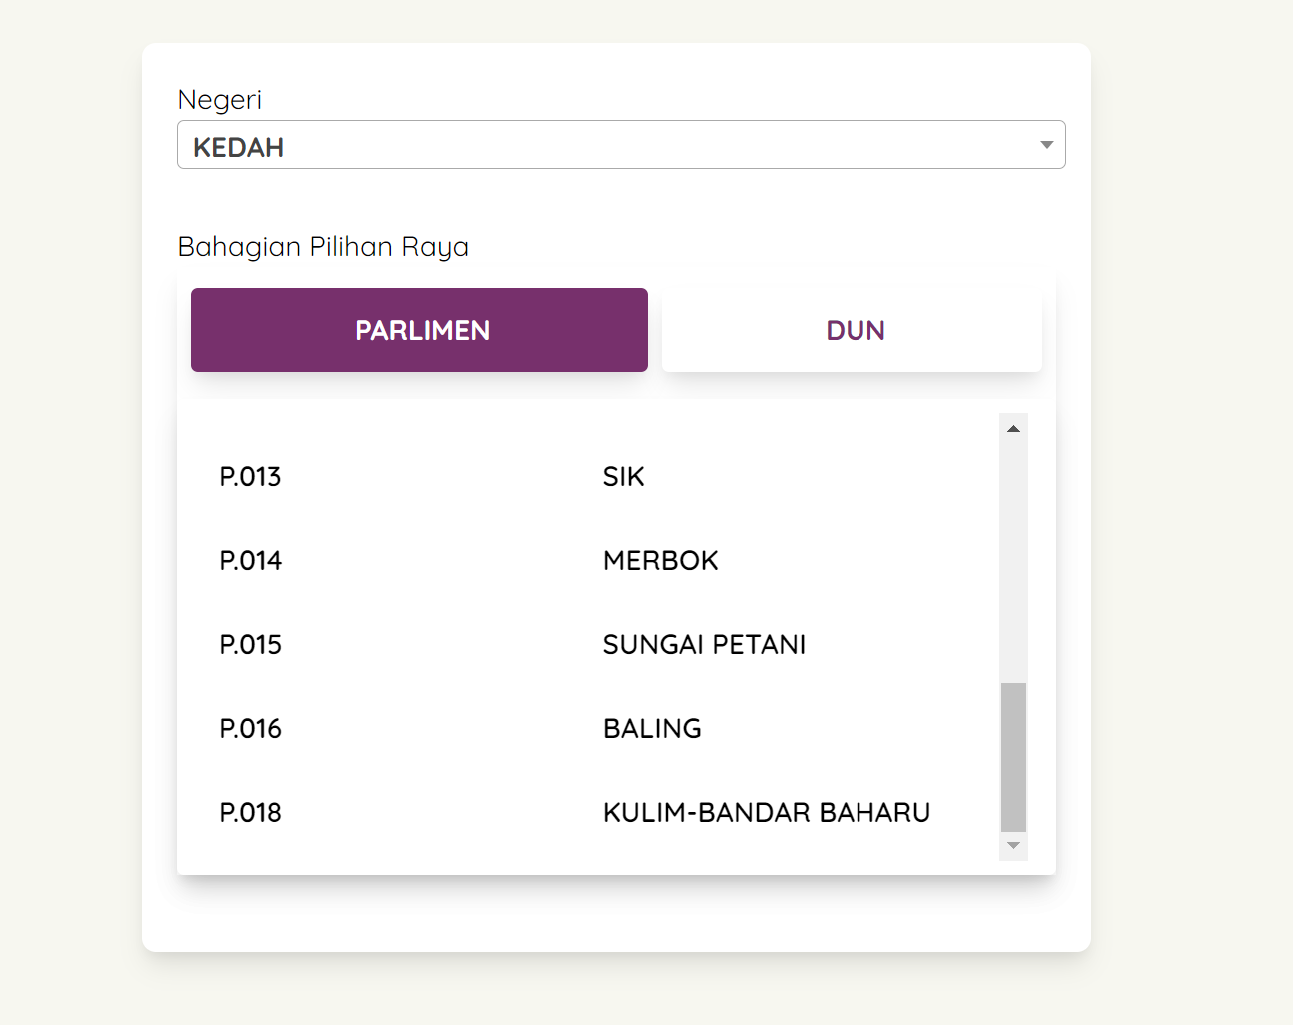 Les dates des élections de Padang Serai sont déplacées en décembre en raison du décès soudain d’un candidat au PH